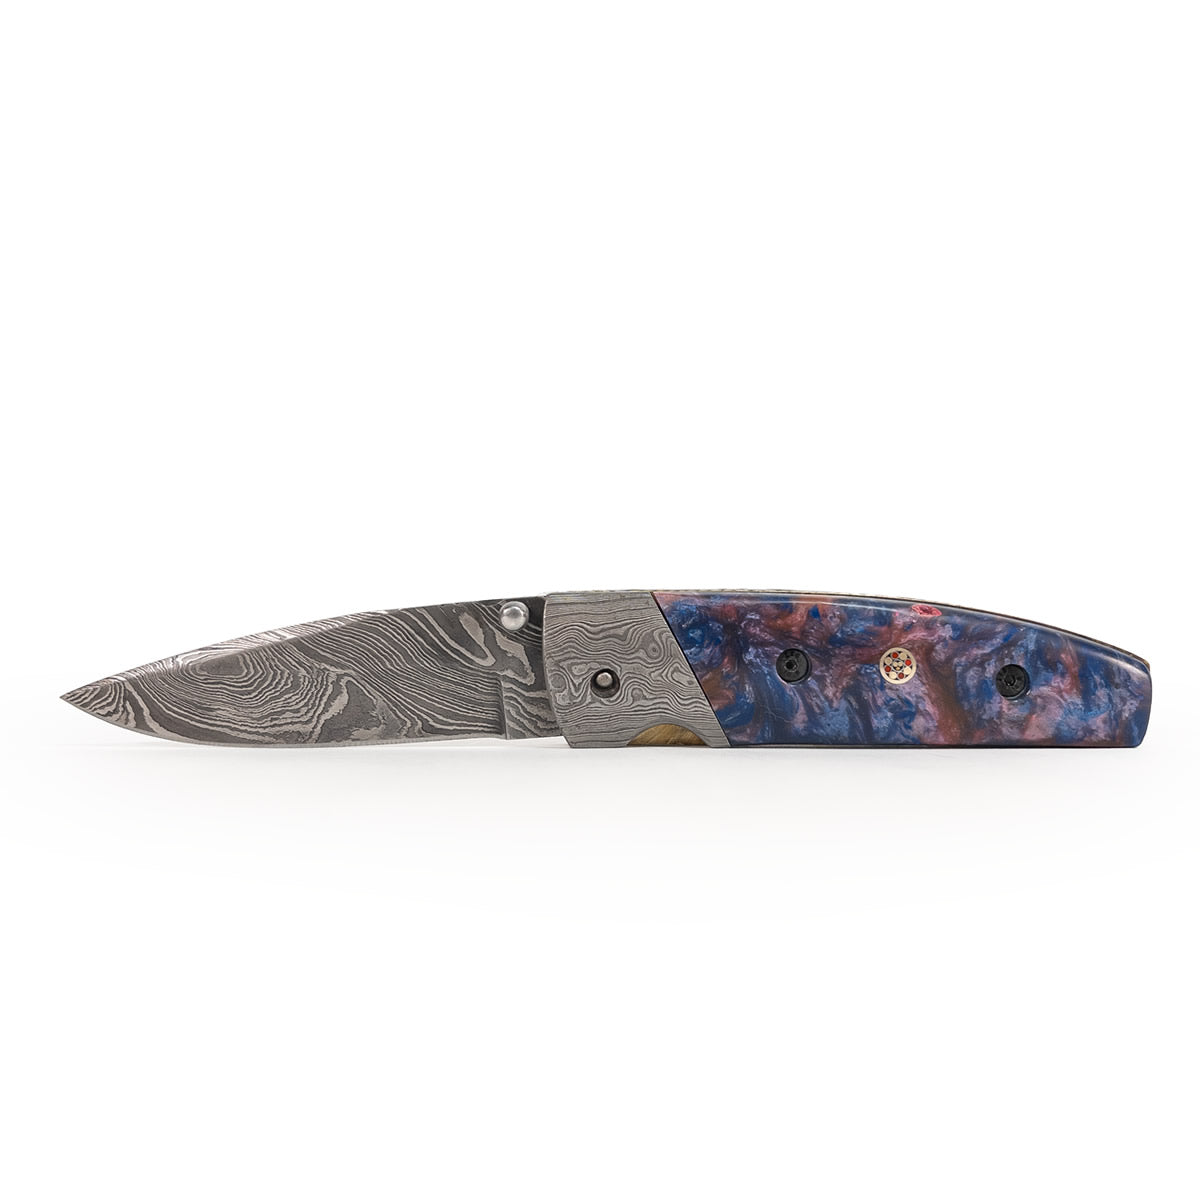 Canivete artesanal lamina aço damasco cabo em resina, detalhe com mosaico.